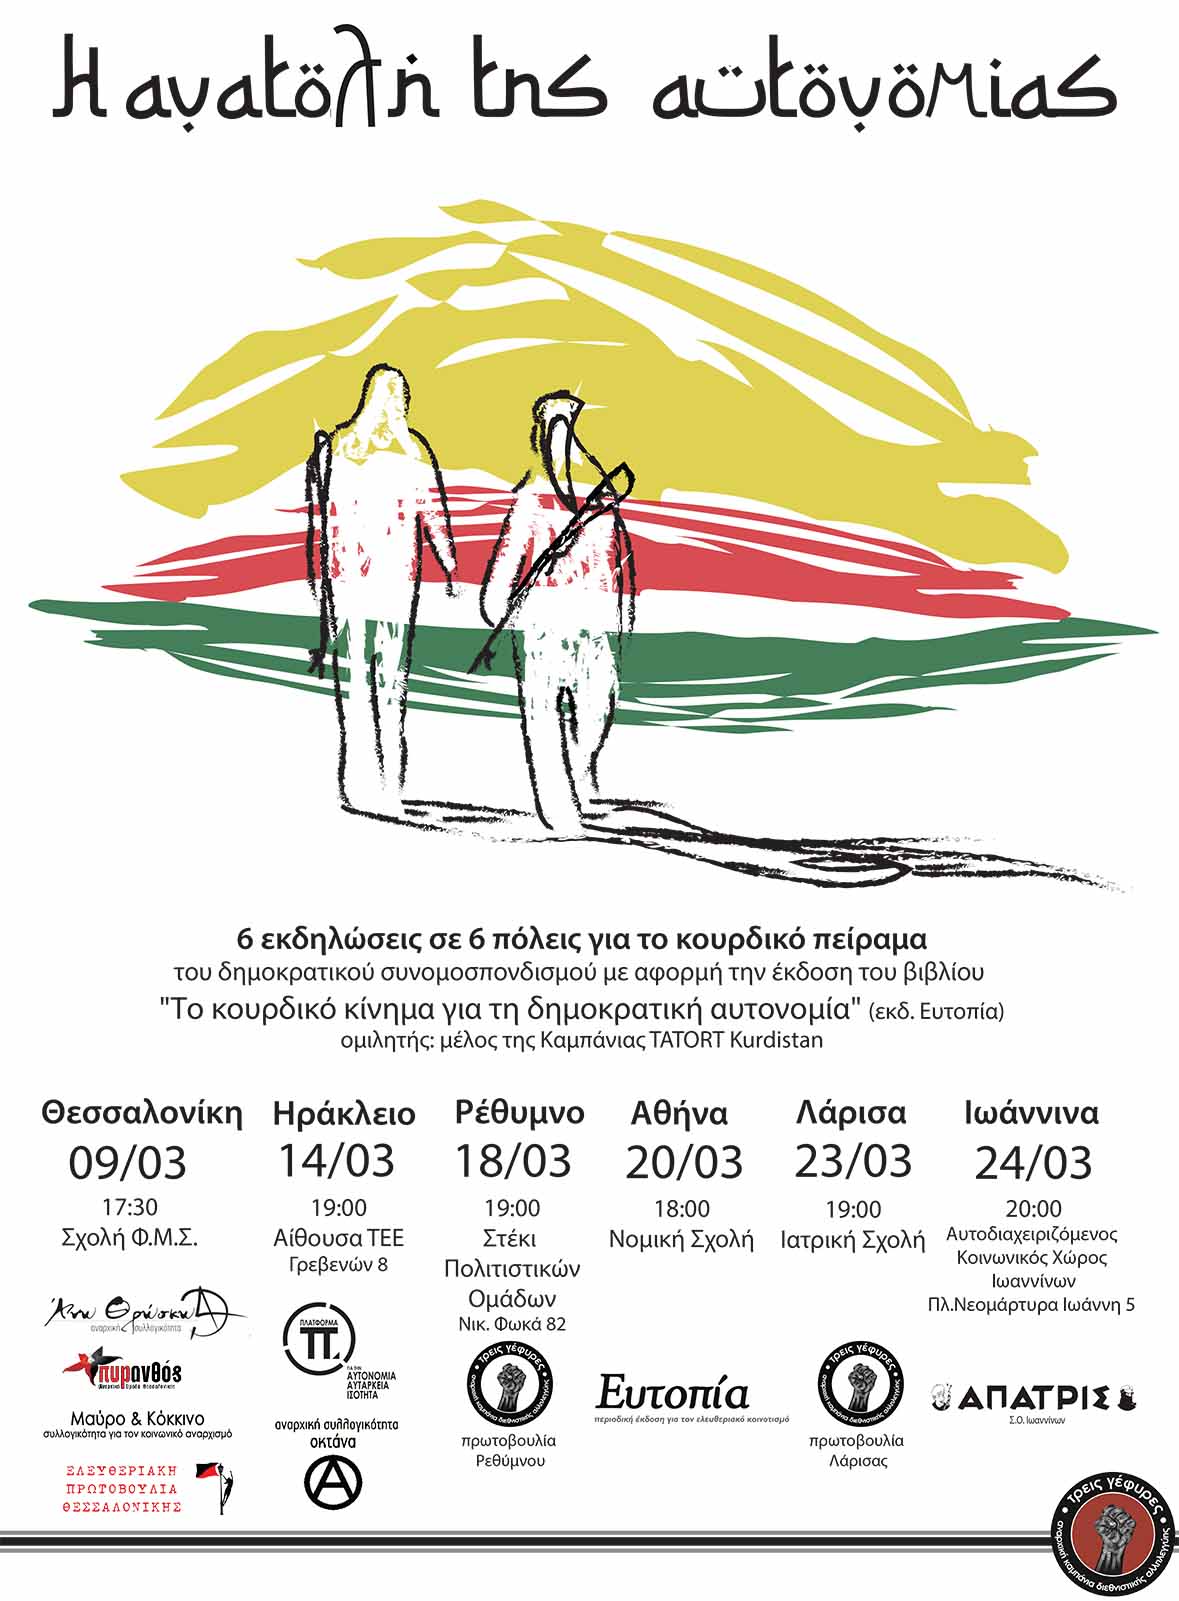 Ηράκλειο: “Η ανατολή της Αυτονομίας” – 13,14 και 15/03 – Τριήμερο εκδηλώσεων αλληλεγγύης στον κουρδικό λαό και τον αγώνα του